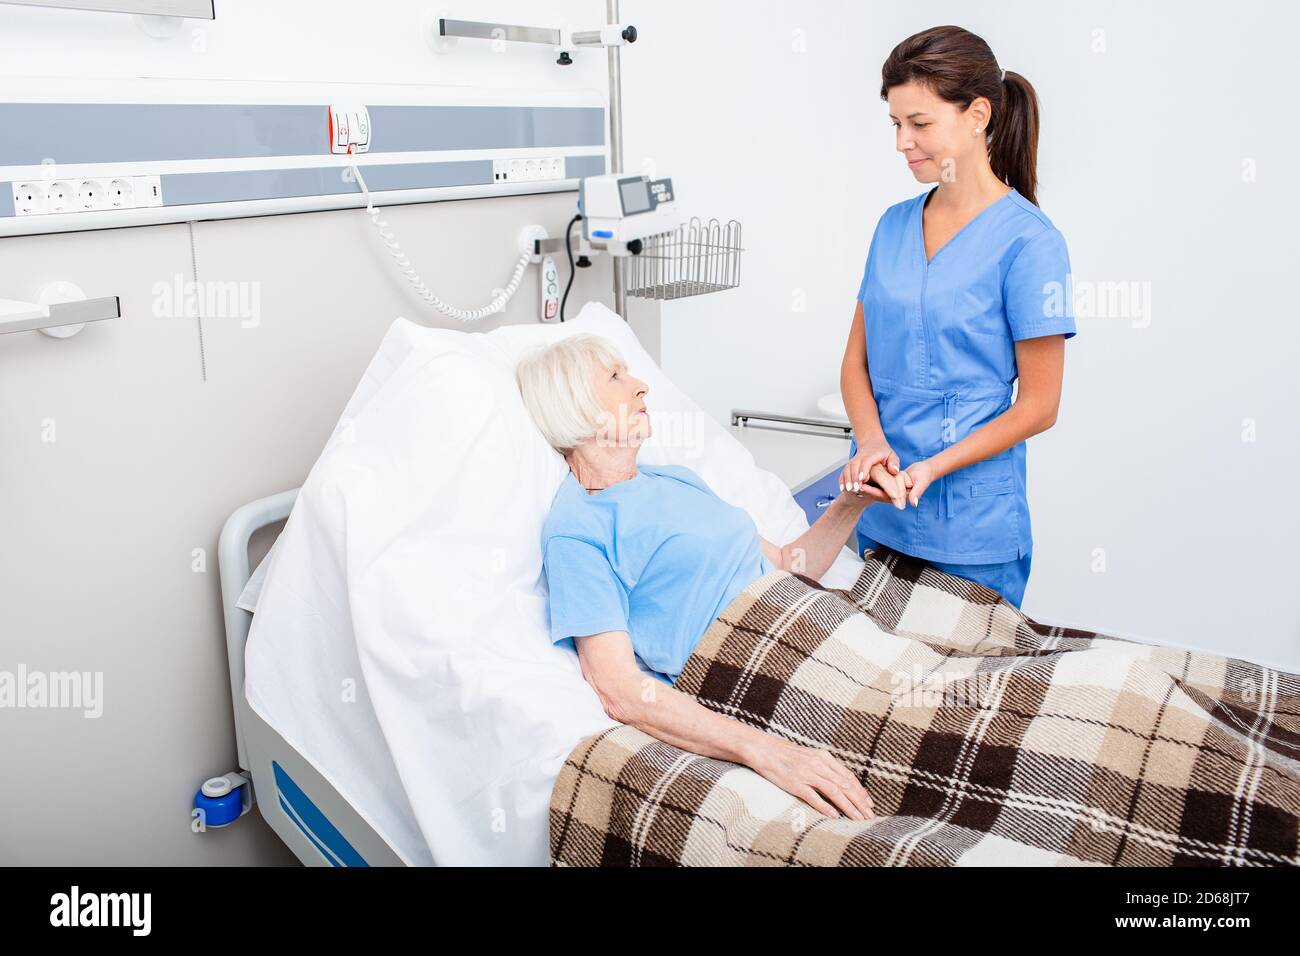 L'infirmière fournit un soutien à un patient allongé dans une chambre d'hôpital. Réadaptation après un accident vasculaire cérébral et une crise cardiaque chez les personnes âgées Banque D'Images